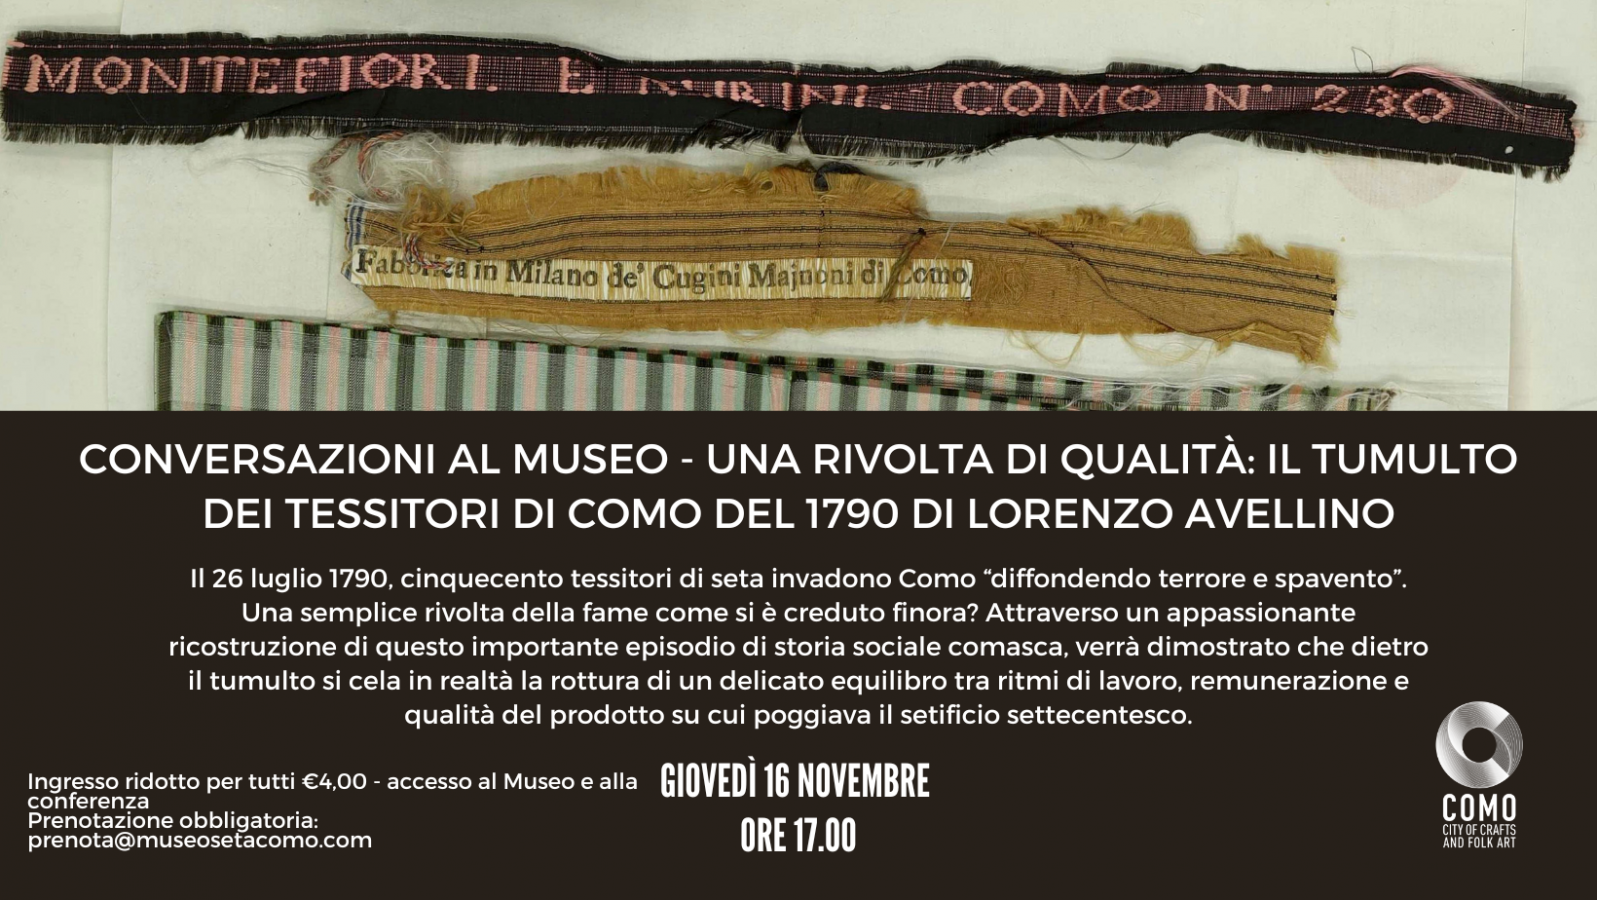 Conversazioni al Museo - Una rivolta di qualità: il tumulto dei tessitori di Como del 1790